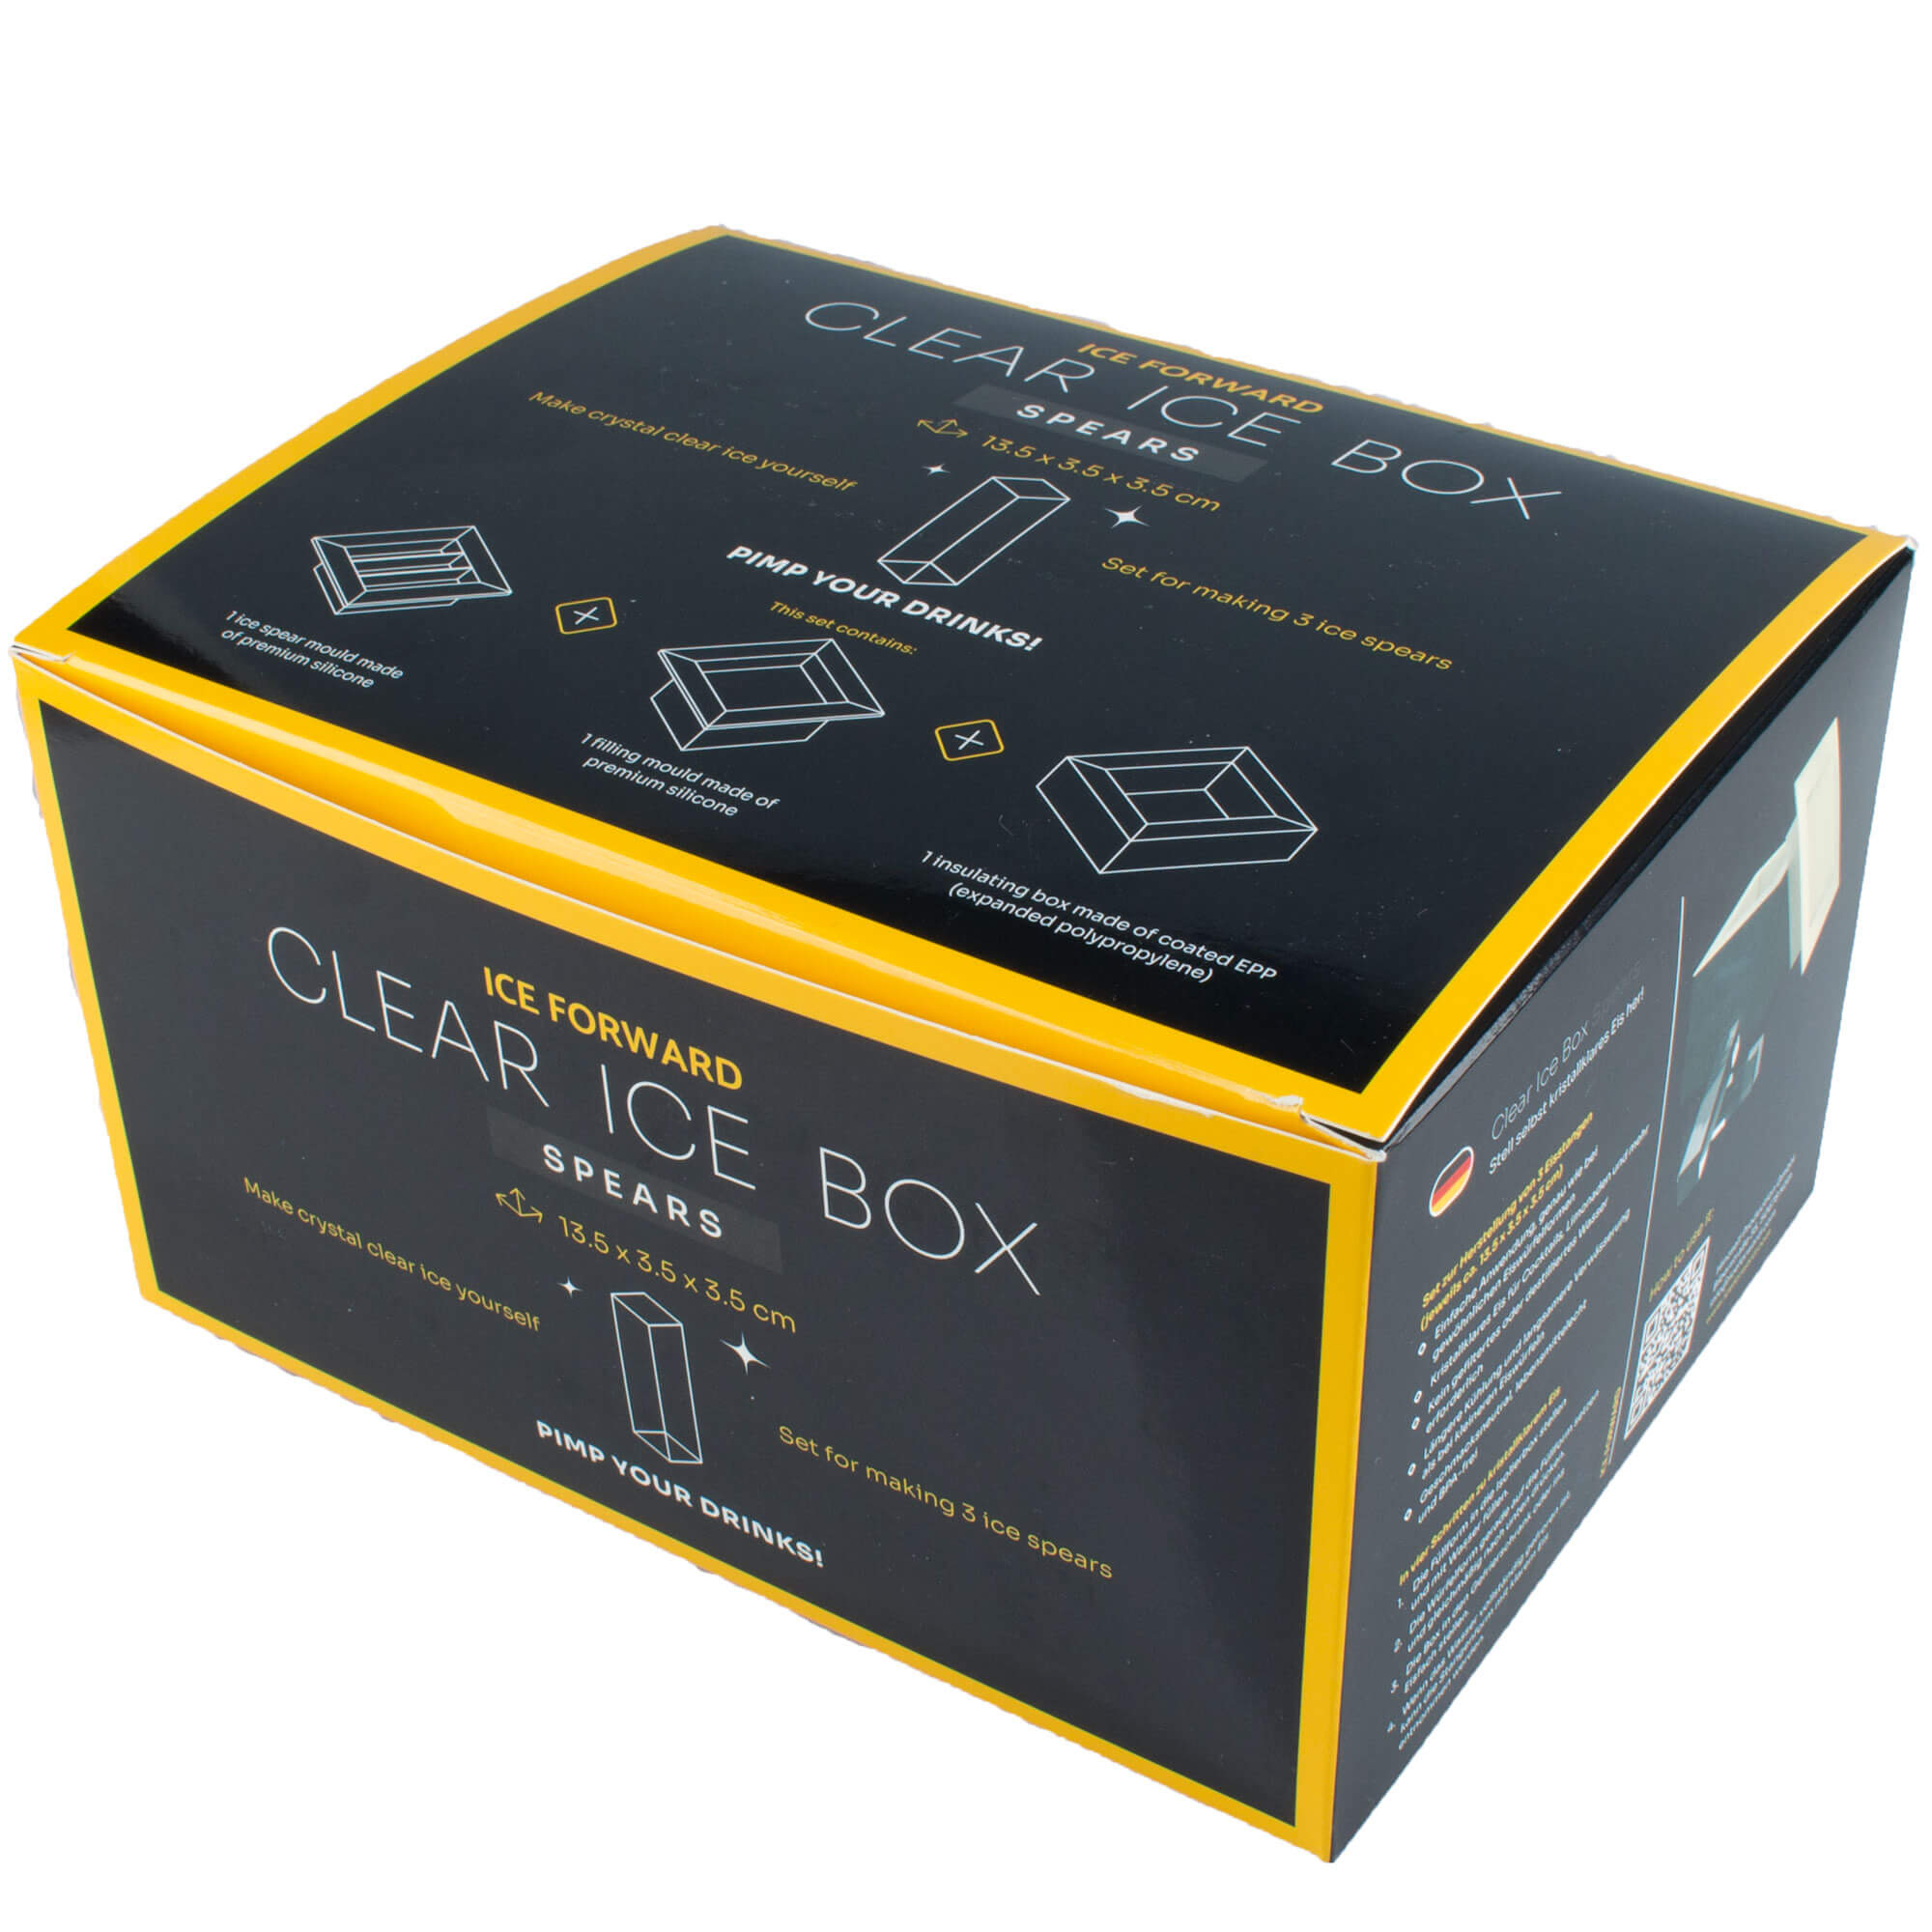 Ice cube mold Clear Ice Box Spears, Ice Forward - 13,5x3,5x3,5cm